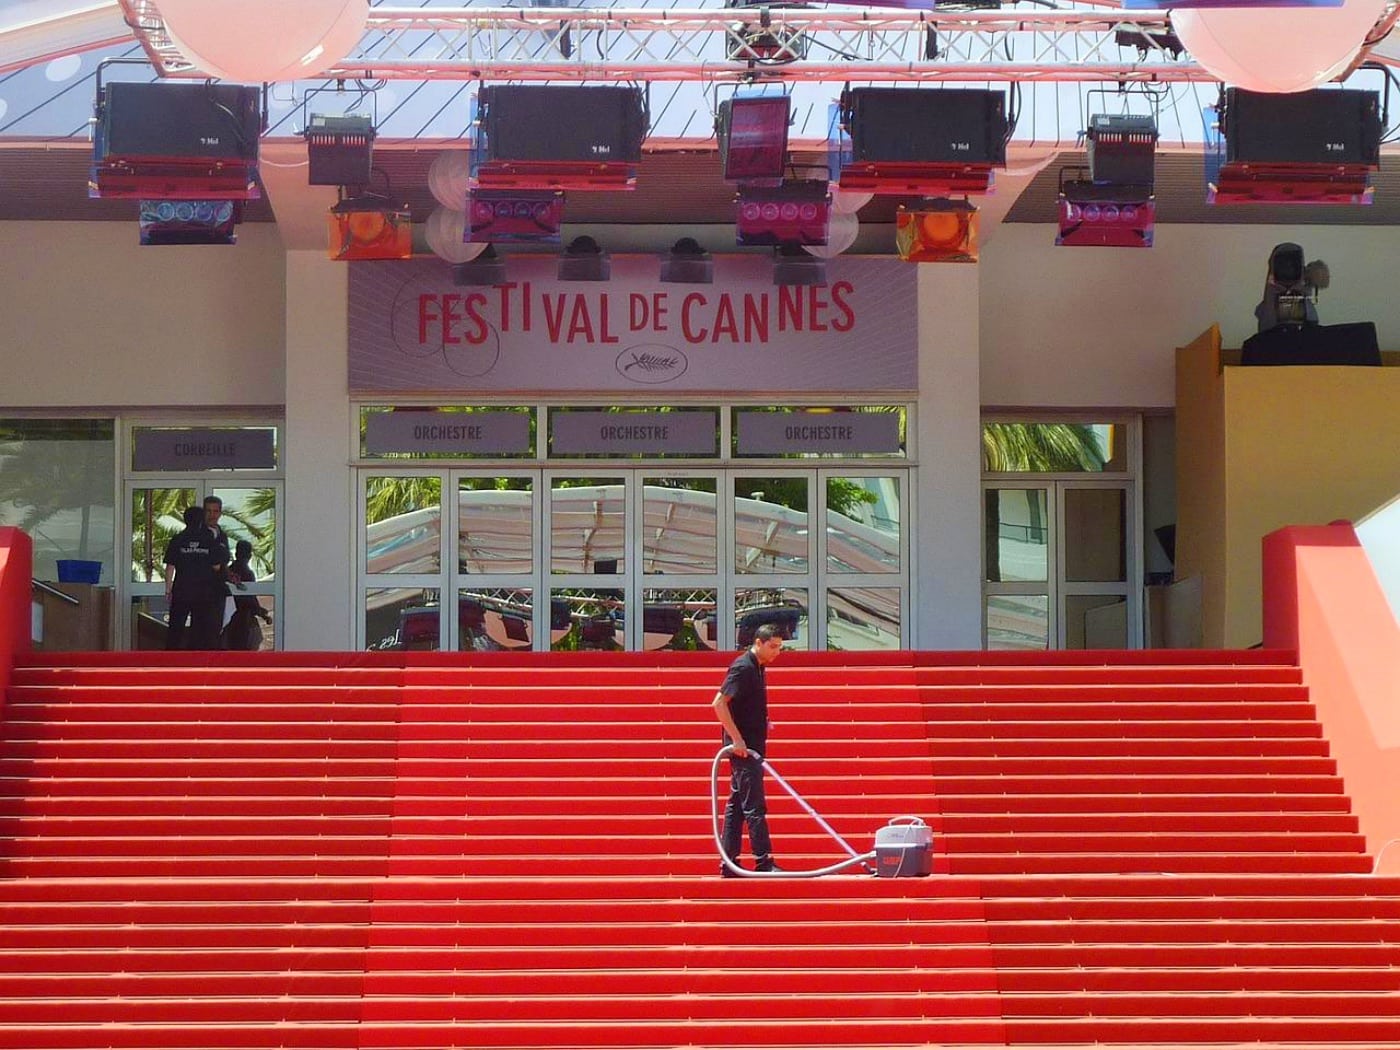 Festival de Cannes, Le Festival de Cannes dévoile son affiche inspirée du Truman Show, Made in Marseille